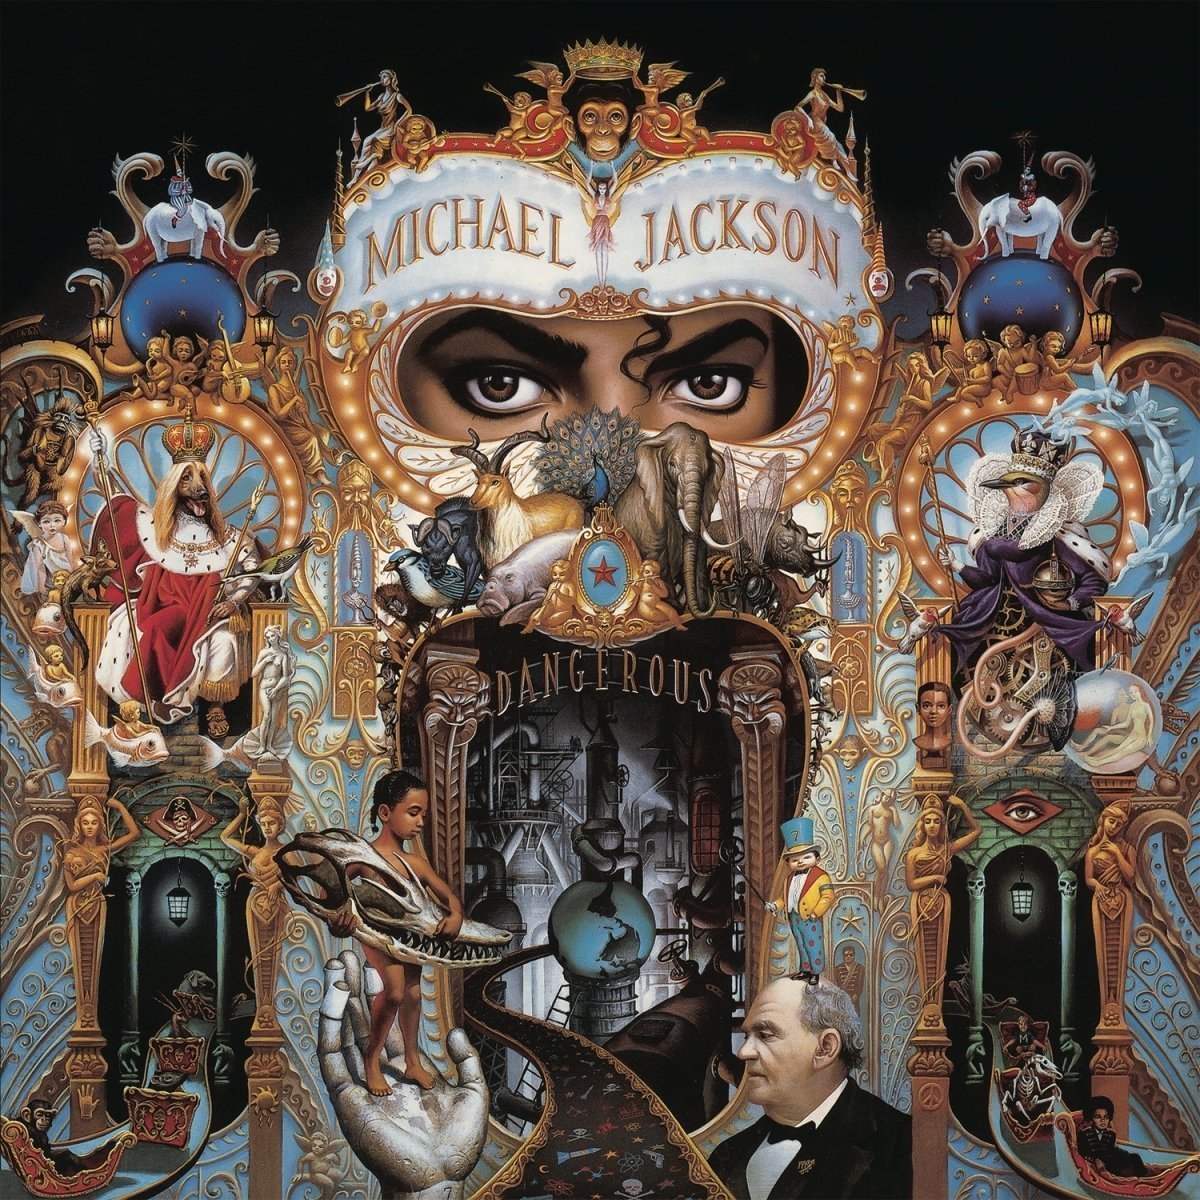 Hanglemez Michael Jackson Dangerous (2 LP)